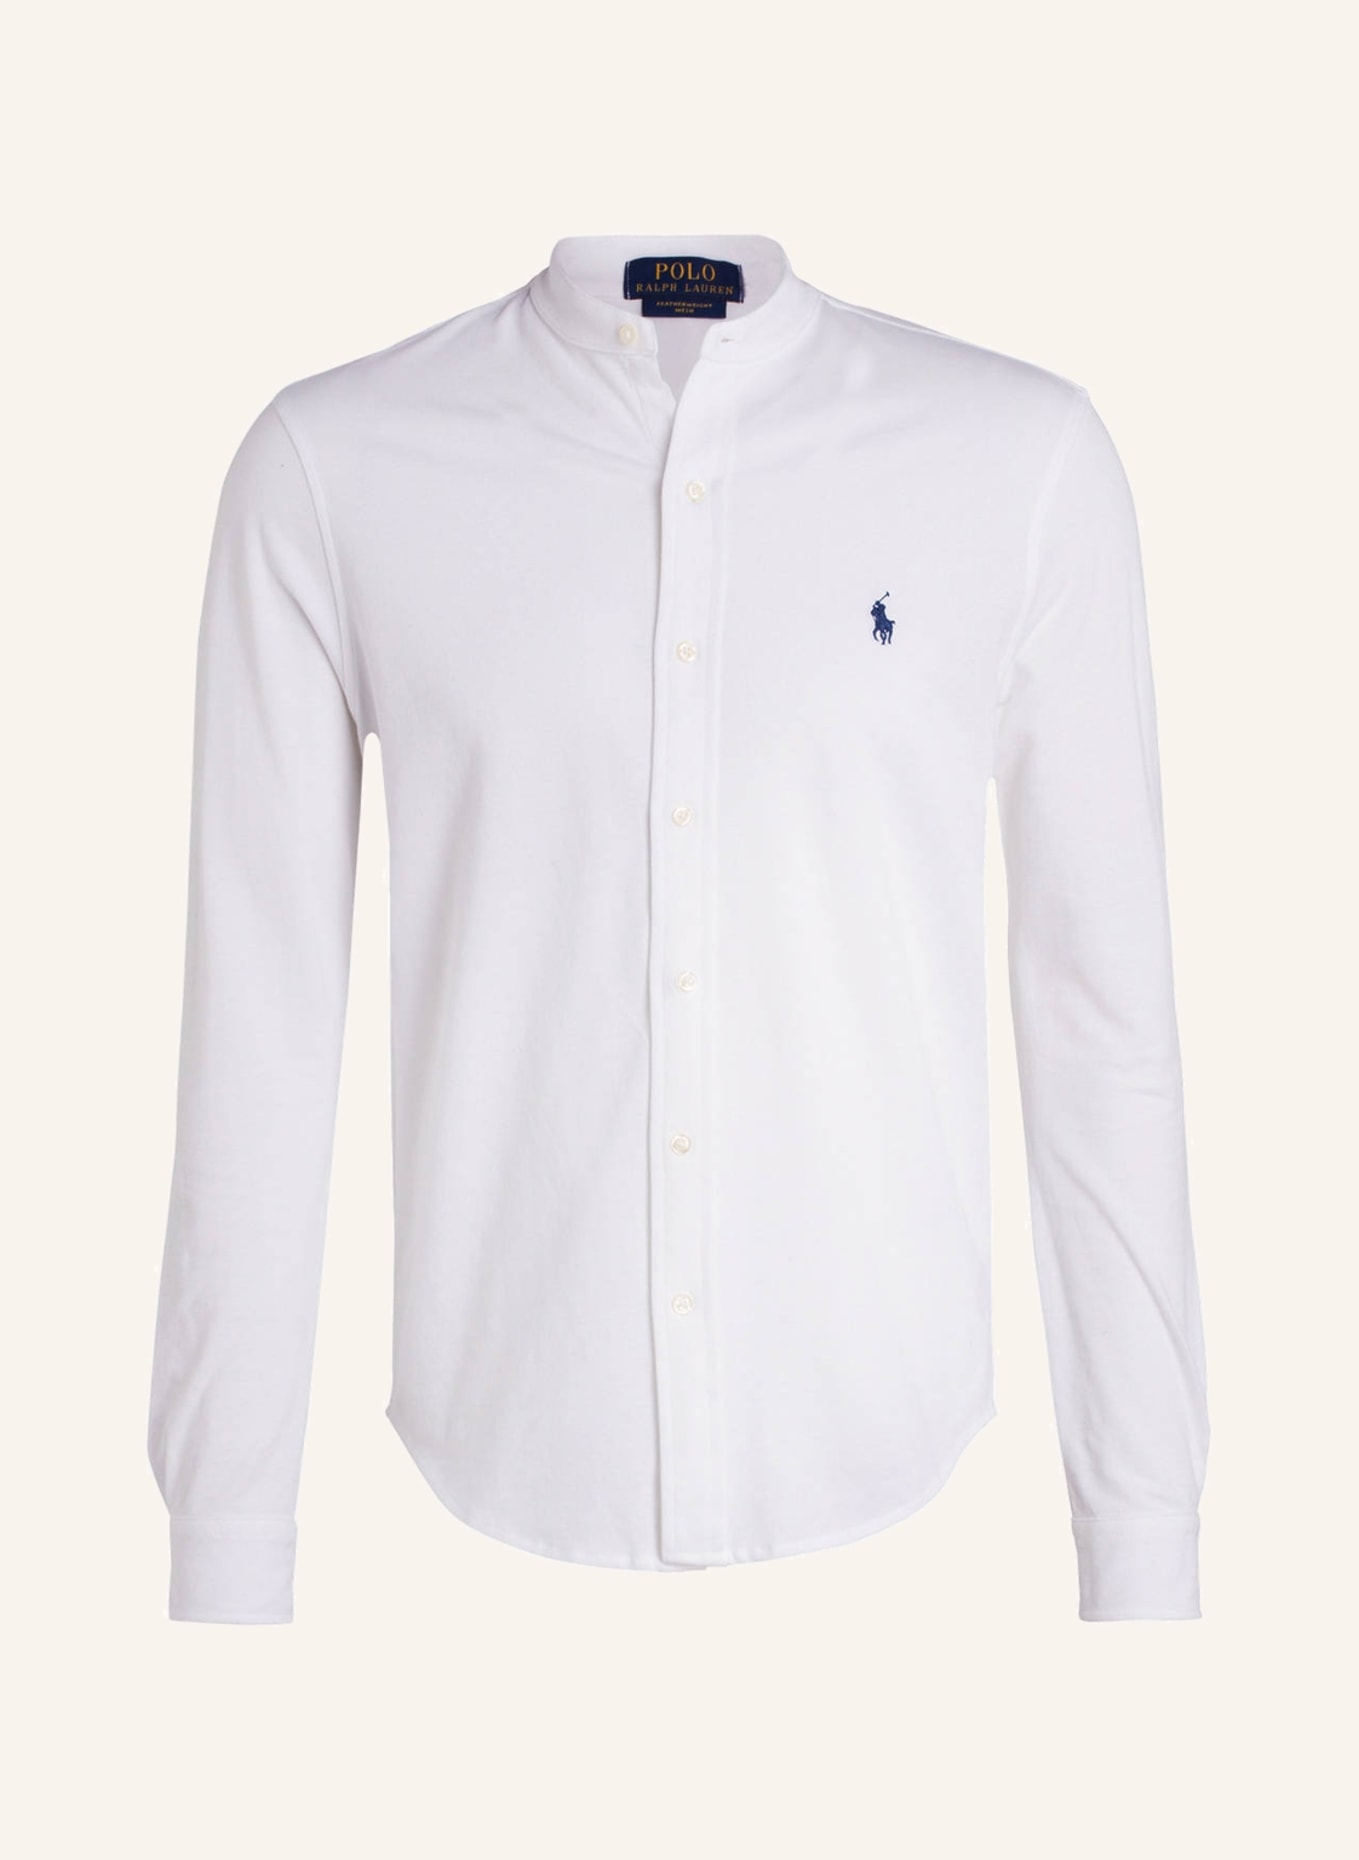 POLO RALPH LAUREN Piqué-Hemd Standard Fit mit Stehkragen, Farbe: WEISS (Bild 1)